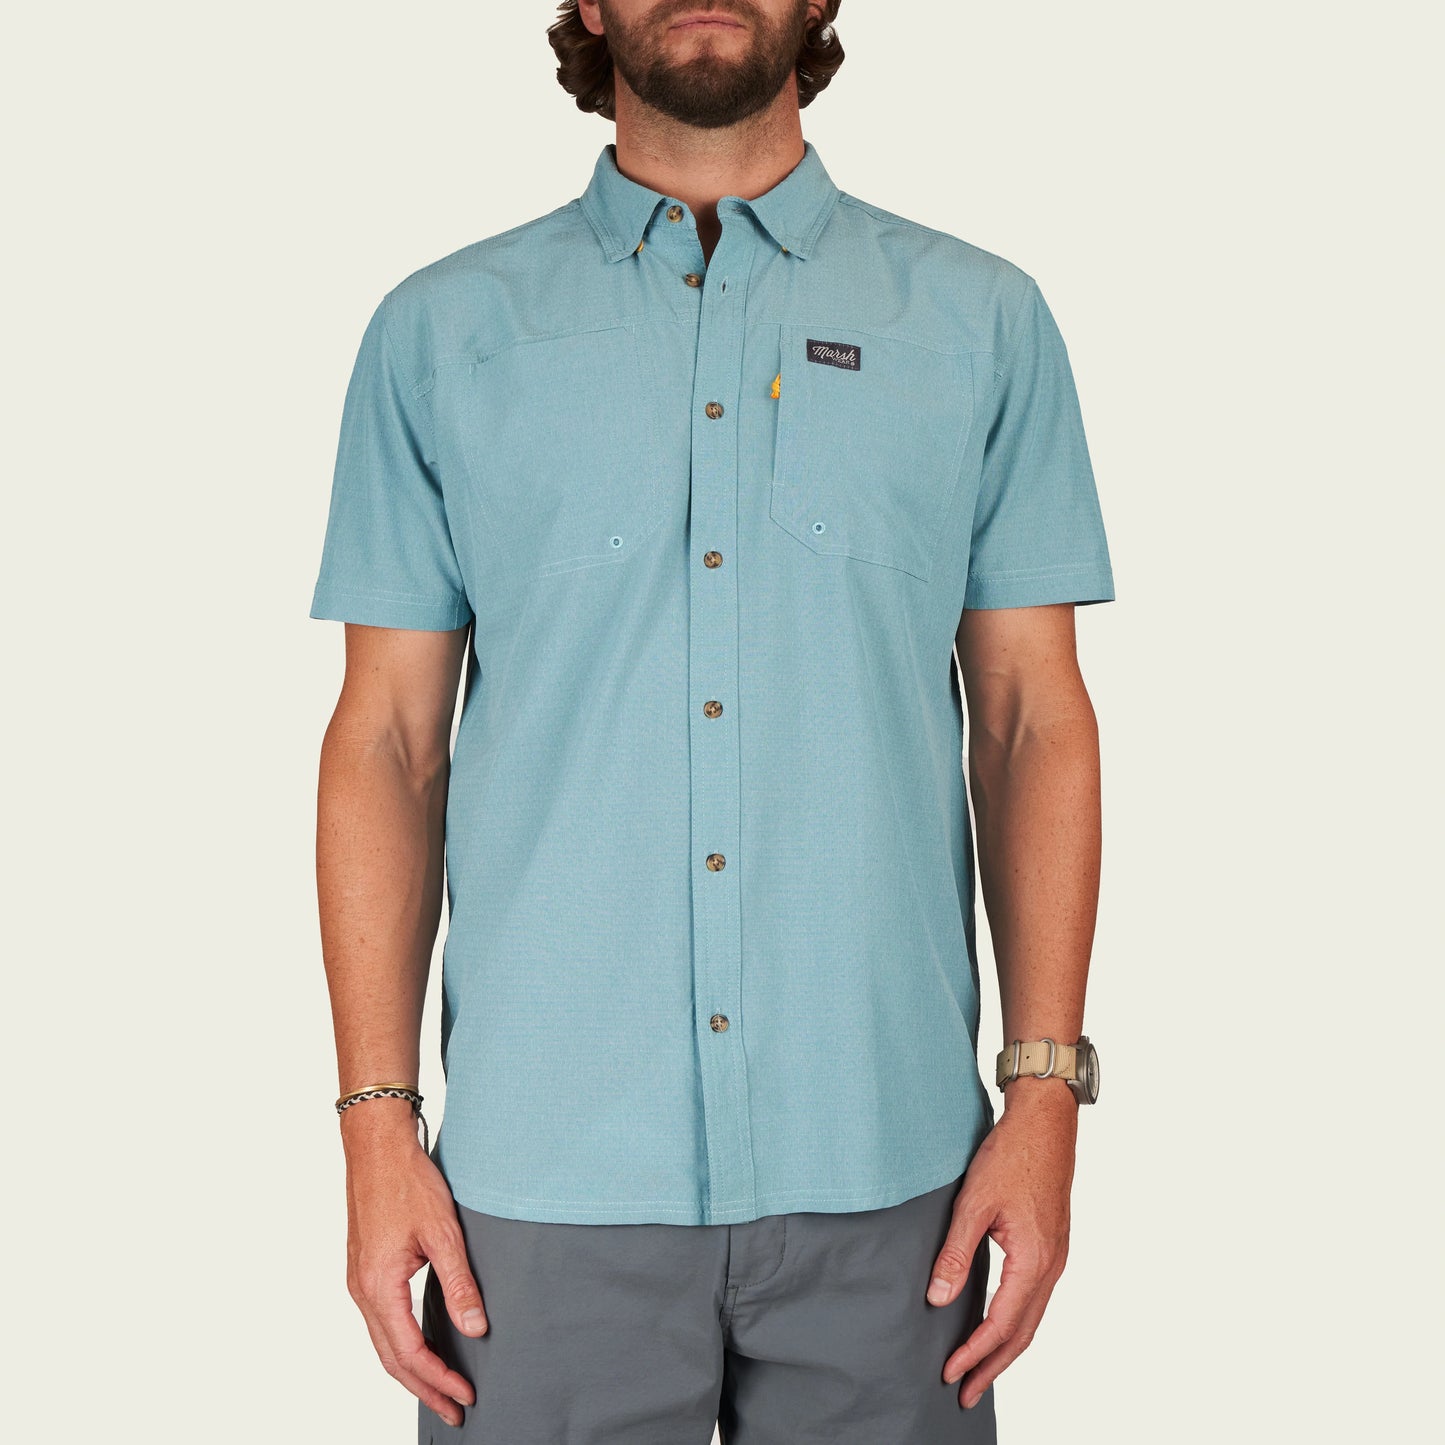 Marsh Wear Lenwood SS Button Up Shirt